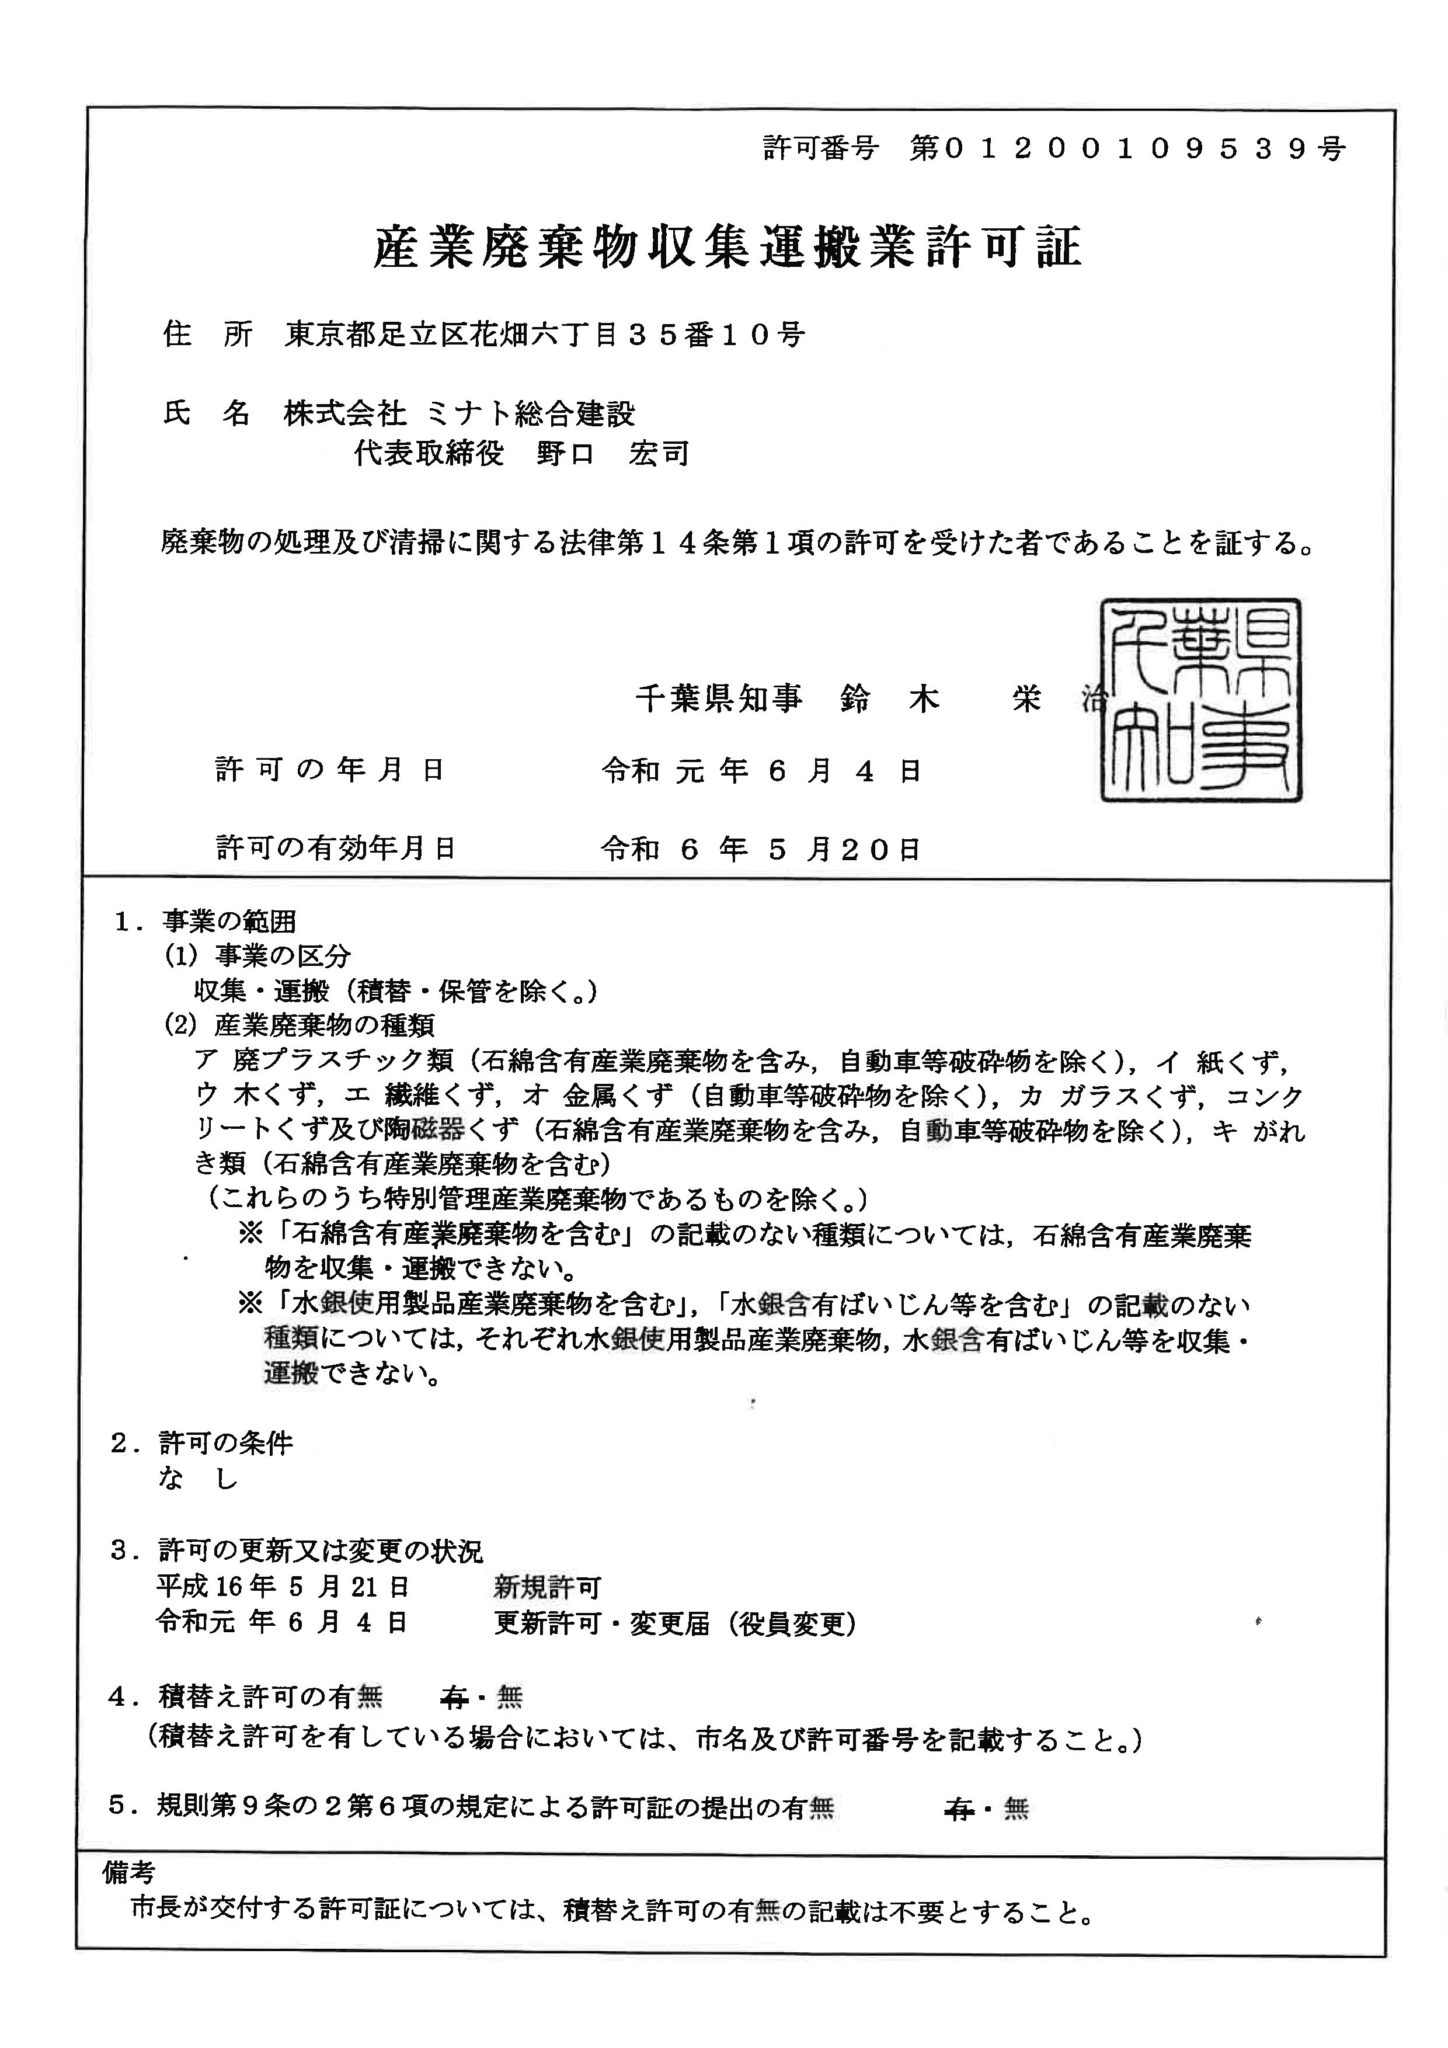 産業廃棄物収集運搬許可証
（千葉県）